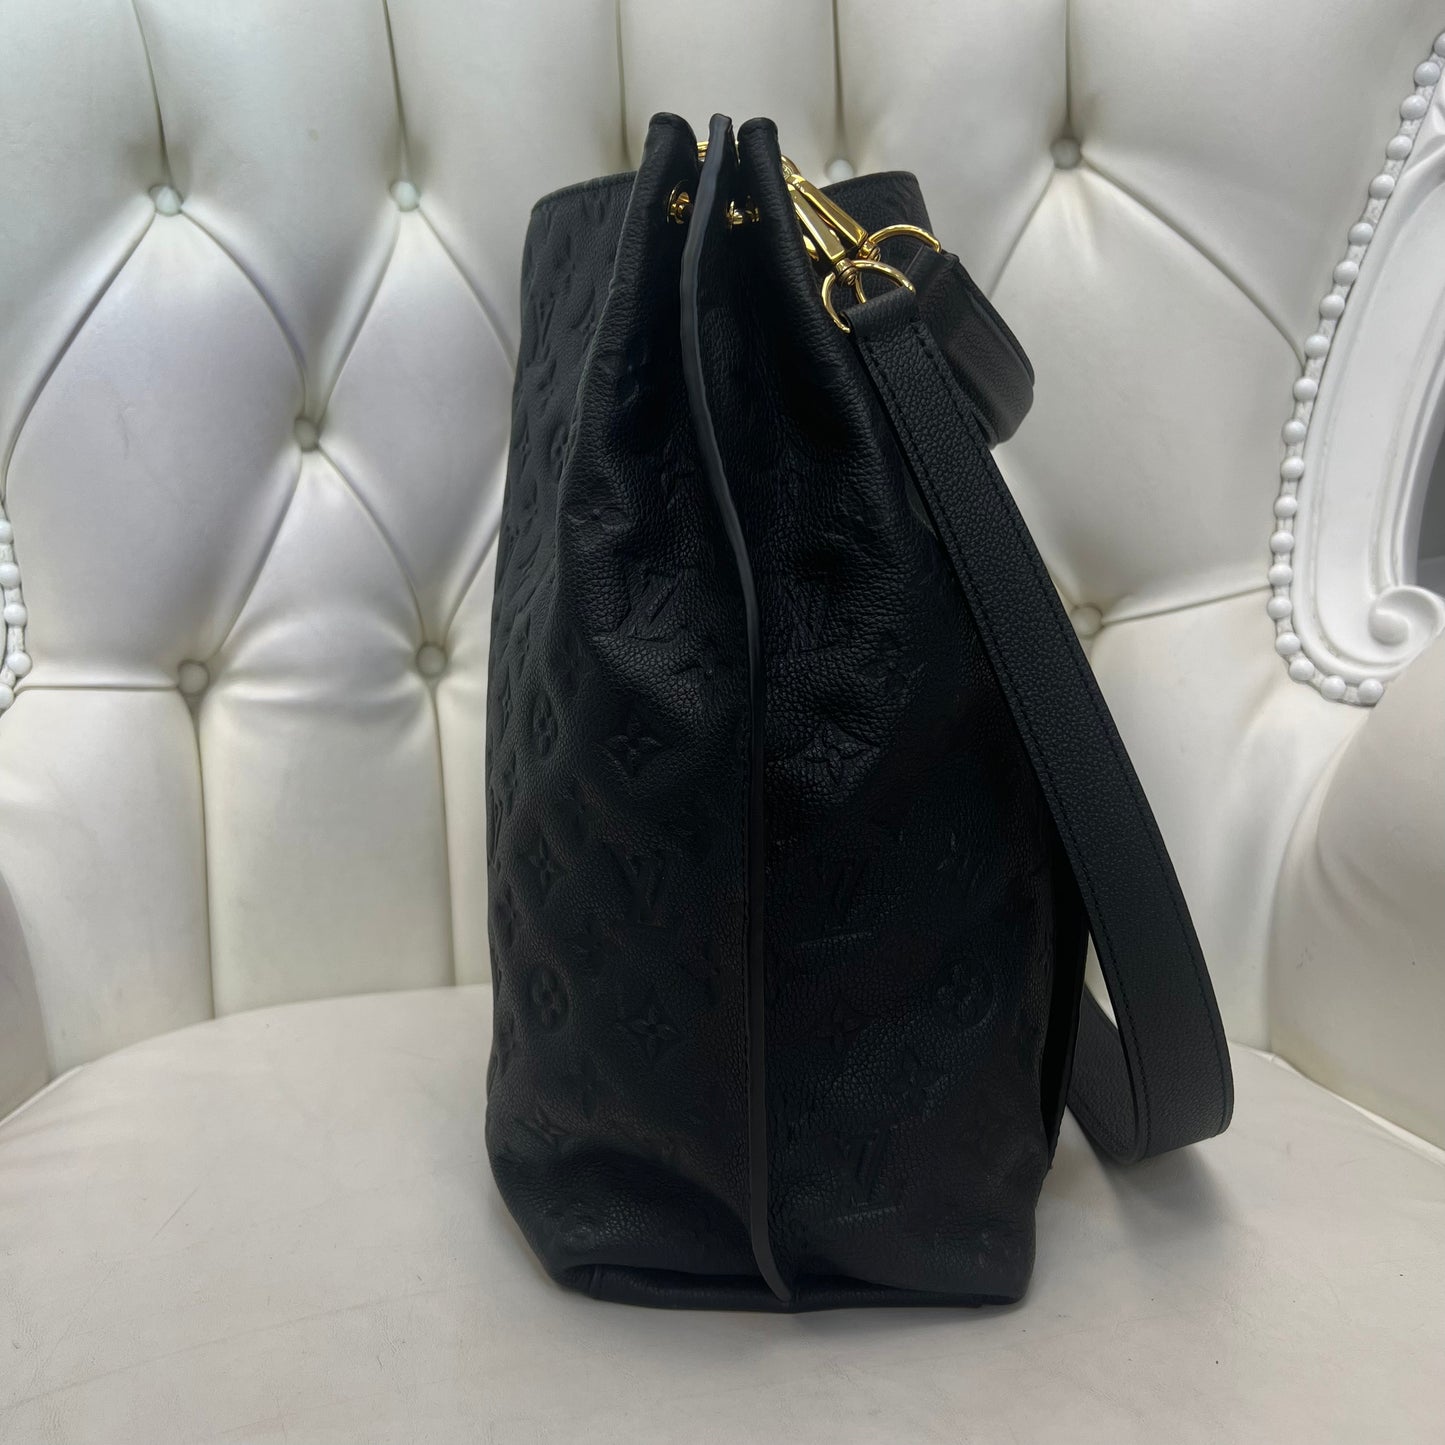 Louis Vuitton Métis Hobo Black Empreinte Leather